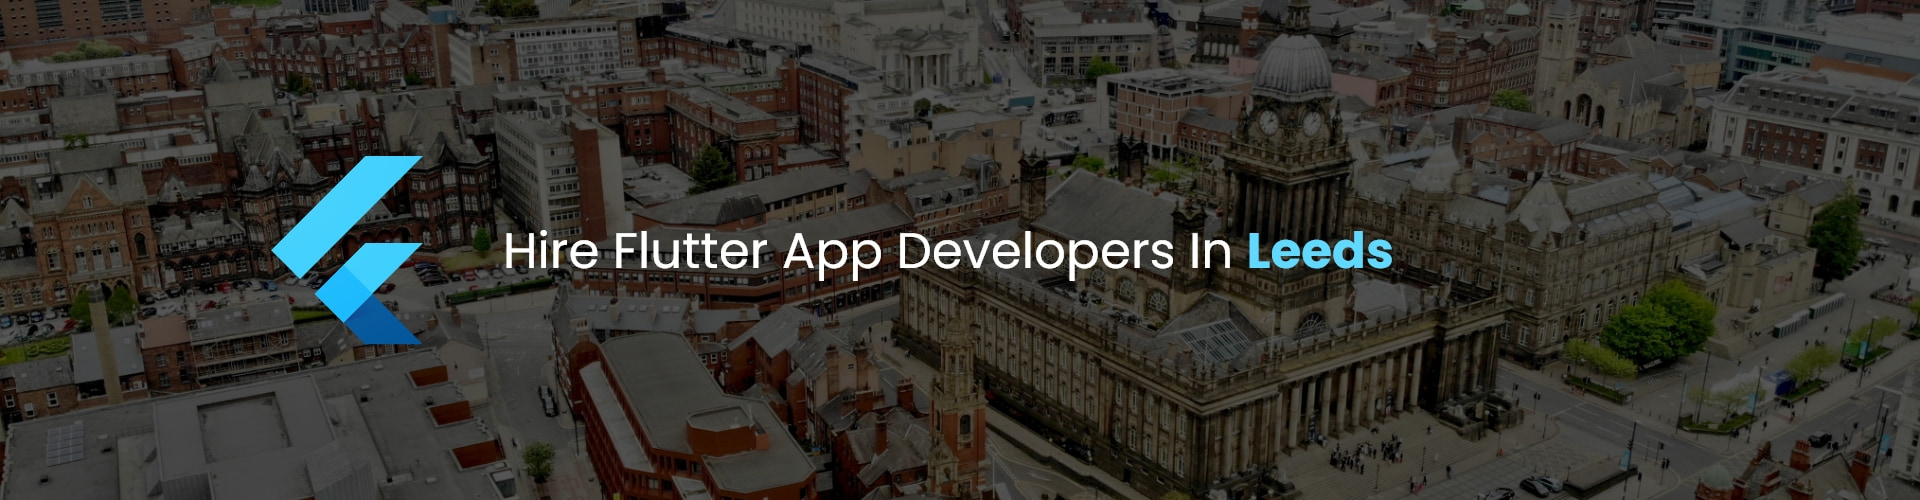 hire flutter app developers in leeds